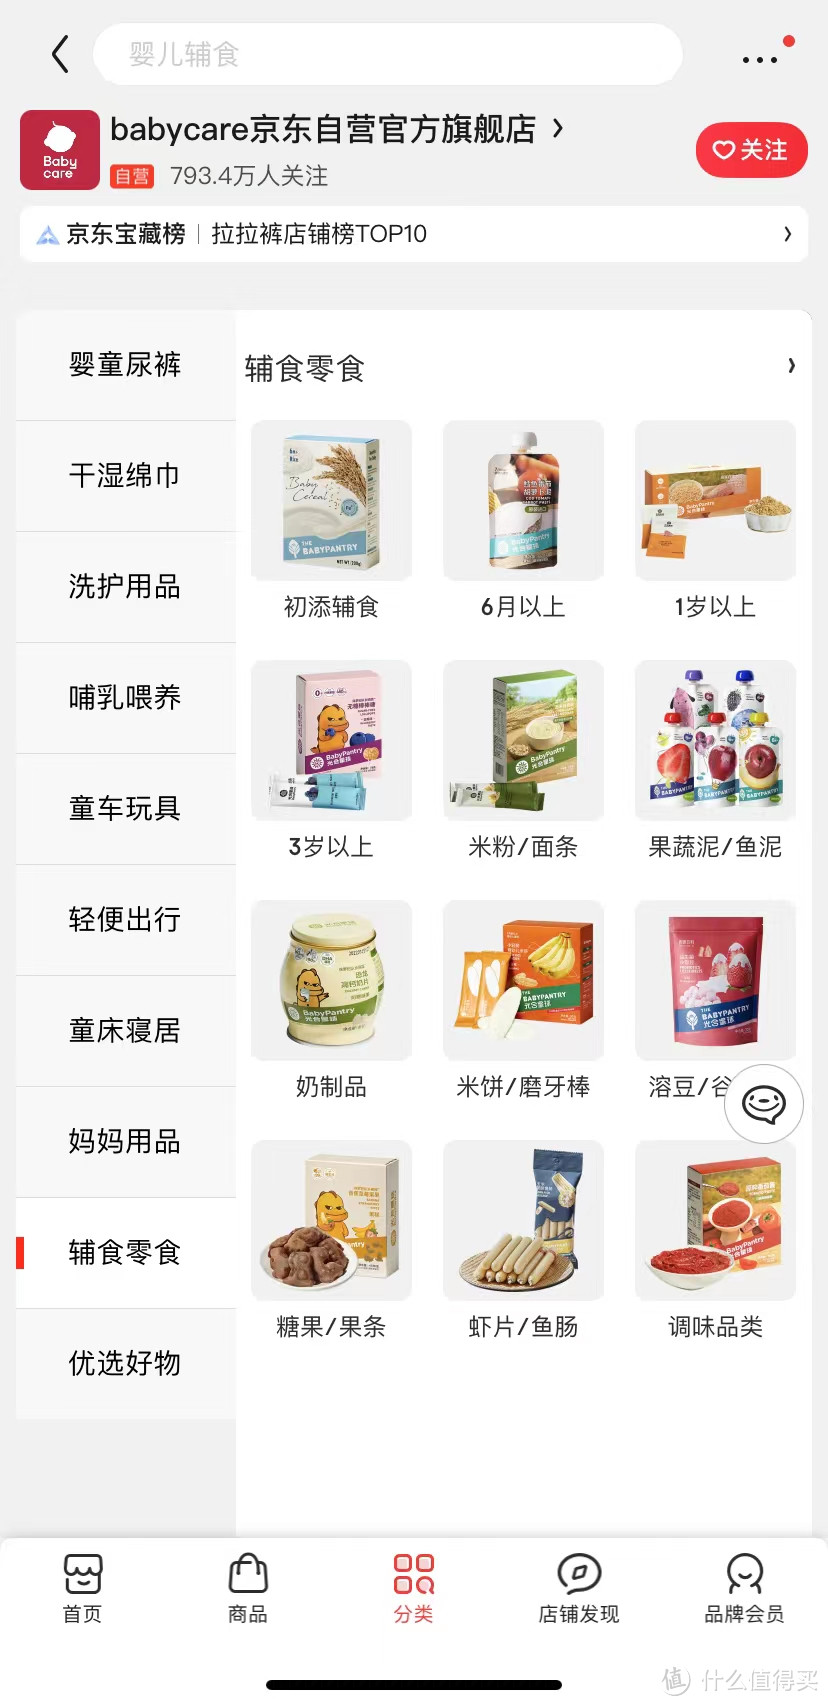 京东电商平台主要婴儿辅食品牌及选购攻略